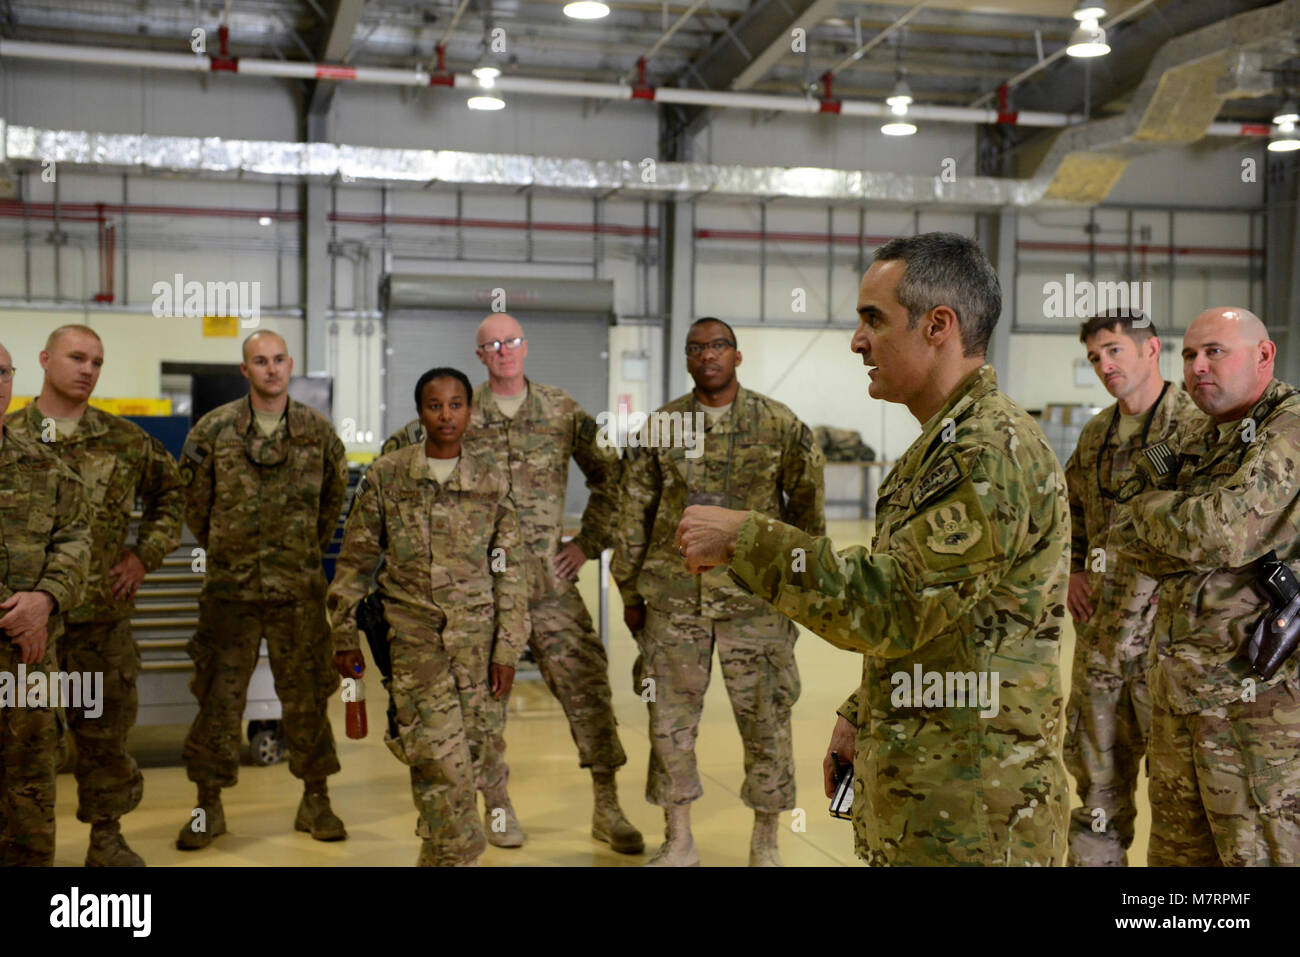 La Fuerza Aérea de los EE.UU. El Sargento Primero en Jefe. Ramon Colon-Lopez Fuerzas Aéreas, jefe del Comando Central, habla a los aviadores de la 455Expedicionaria Escuadrón de Mantenimiento en el aeródromo de Bagram, Afganistán, 9 de julio de 2014. AFCENT Colon-Lopez recorrió Bagram como jefe de comando por primera vez; él habló con los aviadores y respondió preguntas. (Ee.Uu. Foto de la fuerza aérea por el Sargento. Evelyn Chávez/liberado) 455a ala expedicionaria aérea aeródromo de Bagram, Afganistán Foto de stock